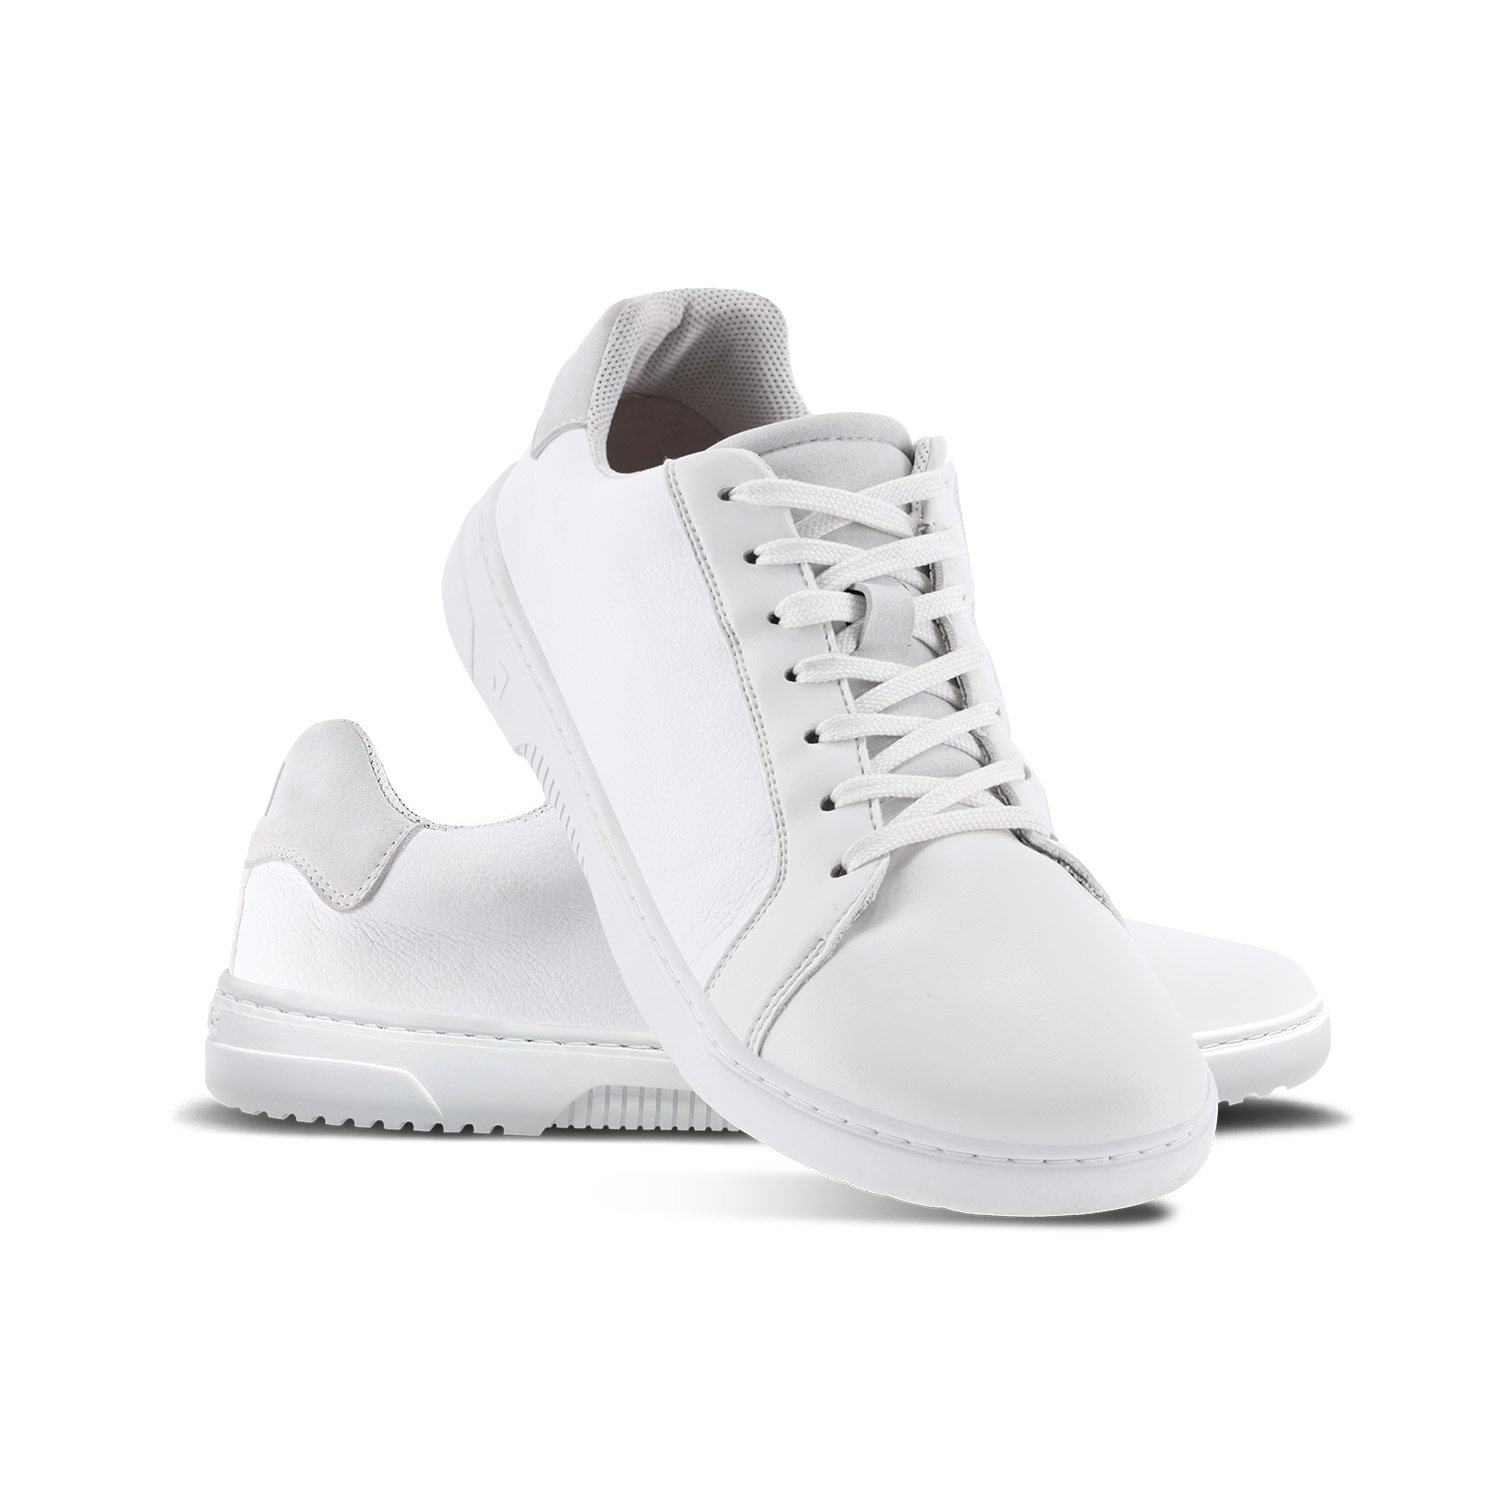 Overtræder Møntvask Mania Barefoot Sneakers Barebarics - Zoom - All White | Be Lenka